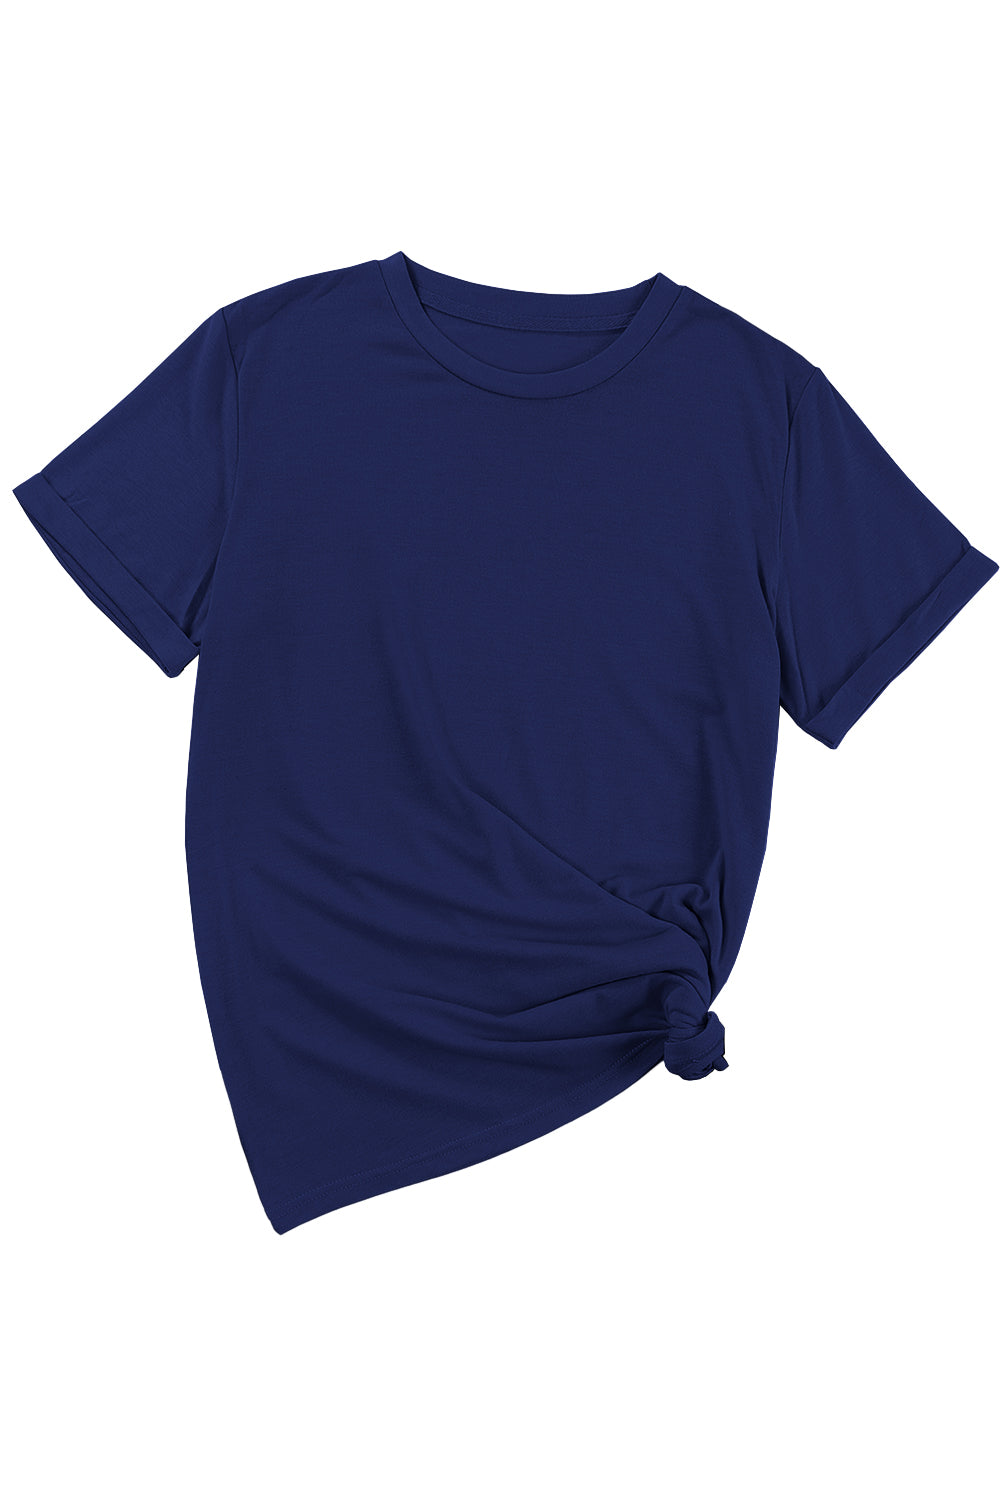 Modra enobarvna majica z okroglim izrezom za prosti čas